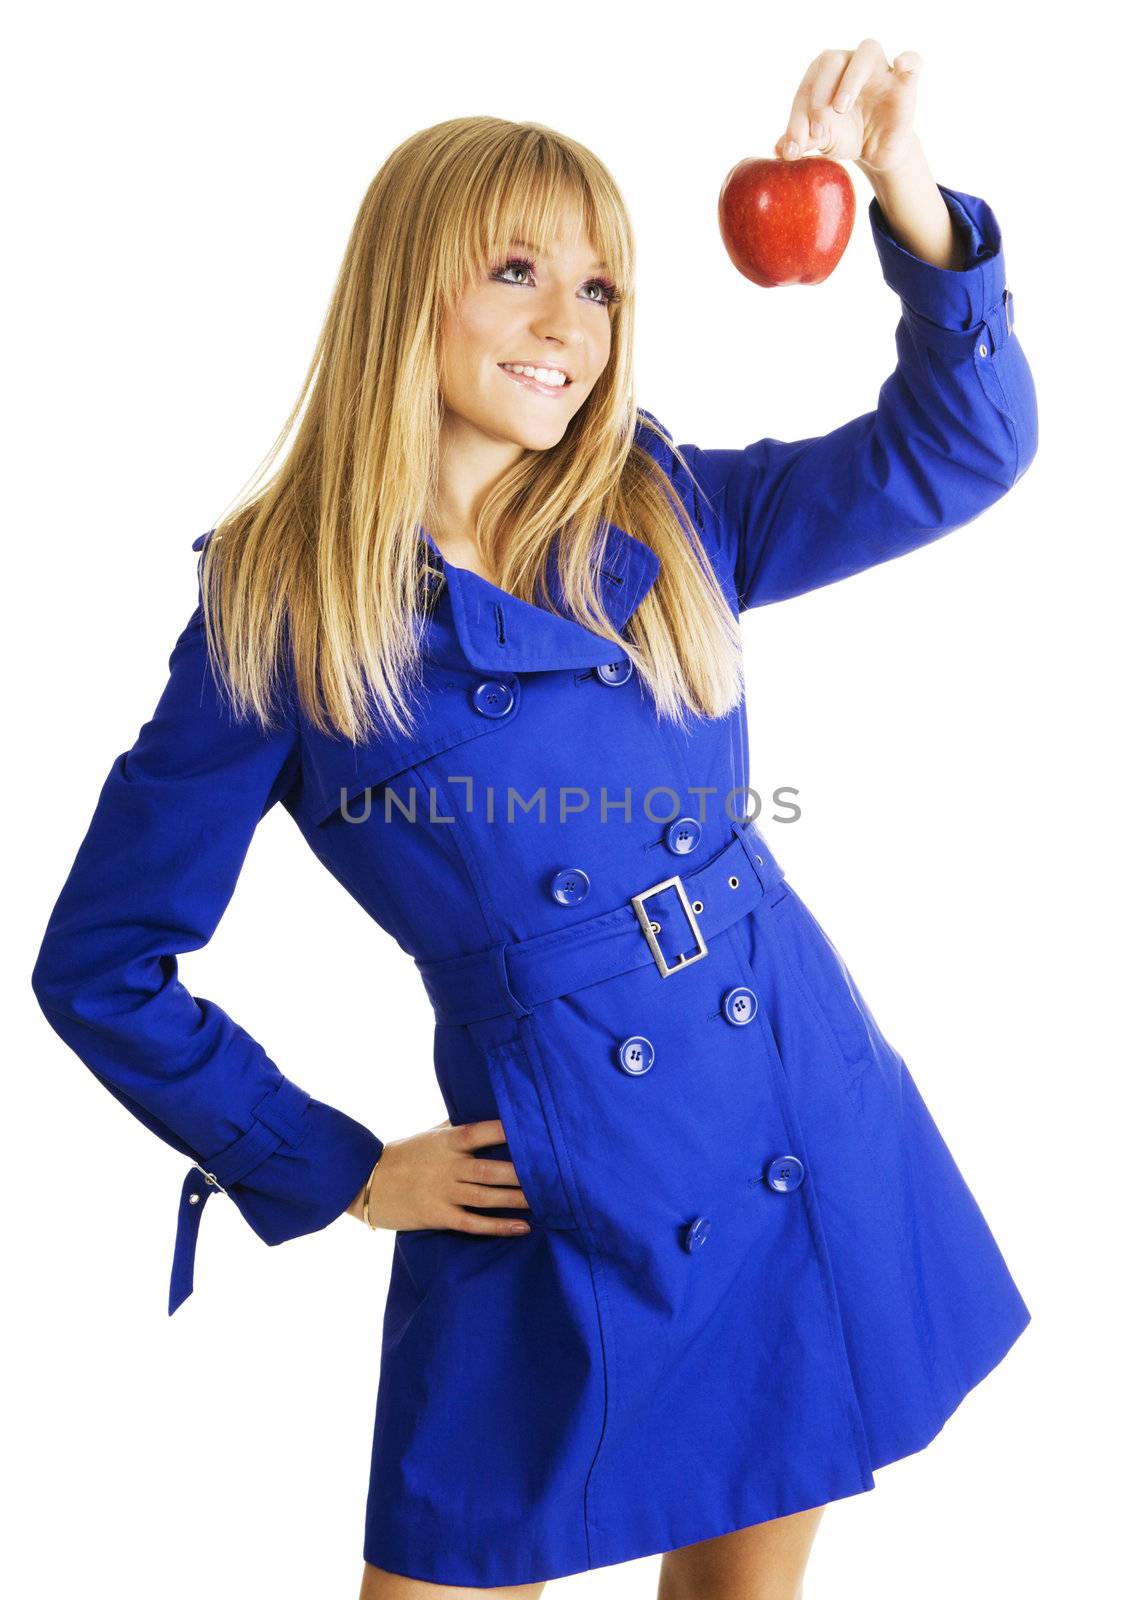 Girl in blue coat holding an apple by Gdolgikh